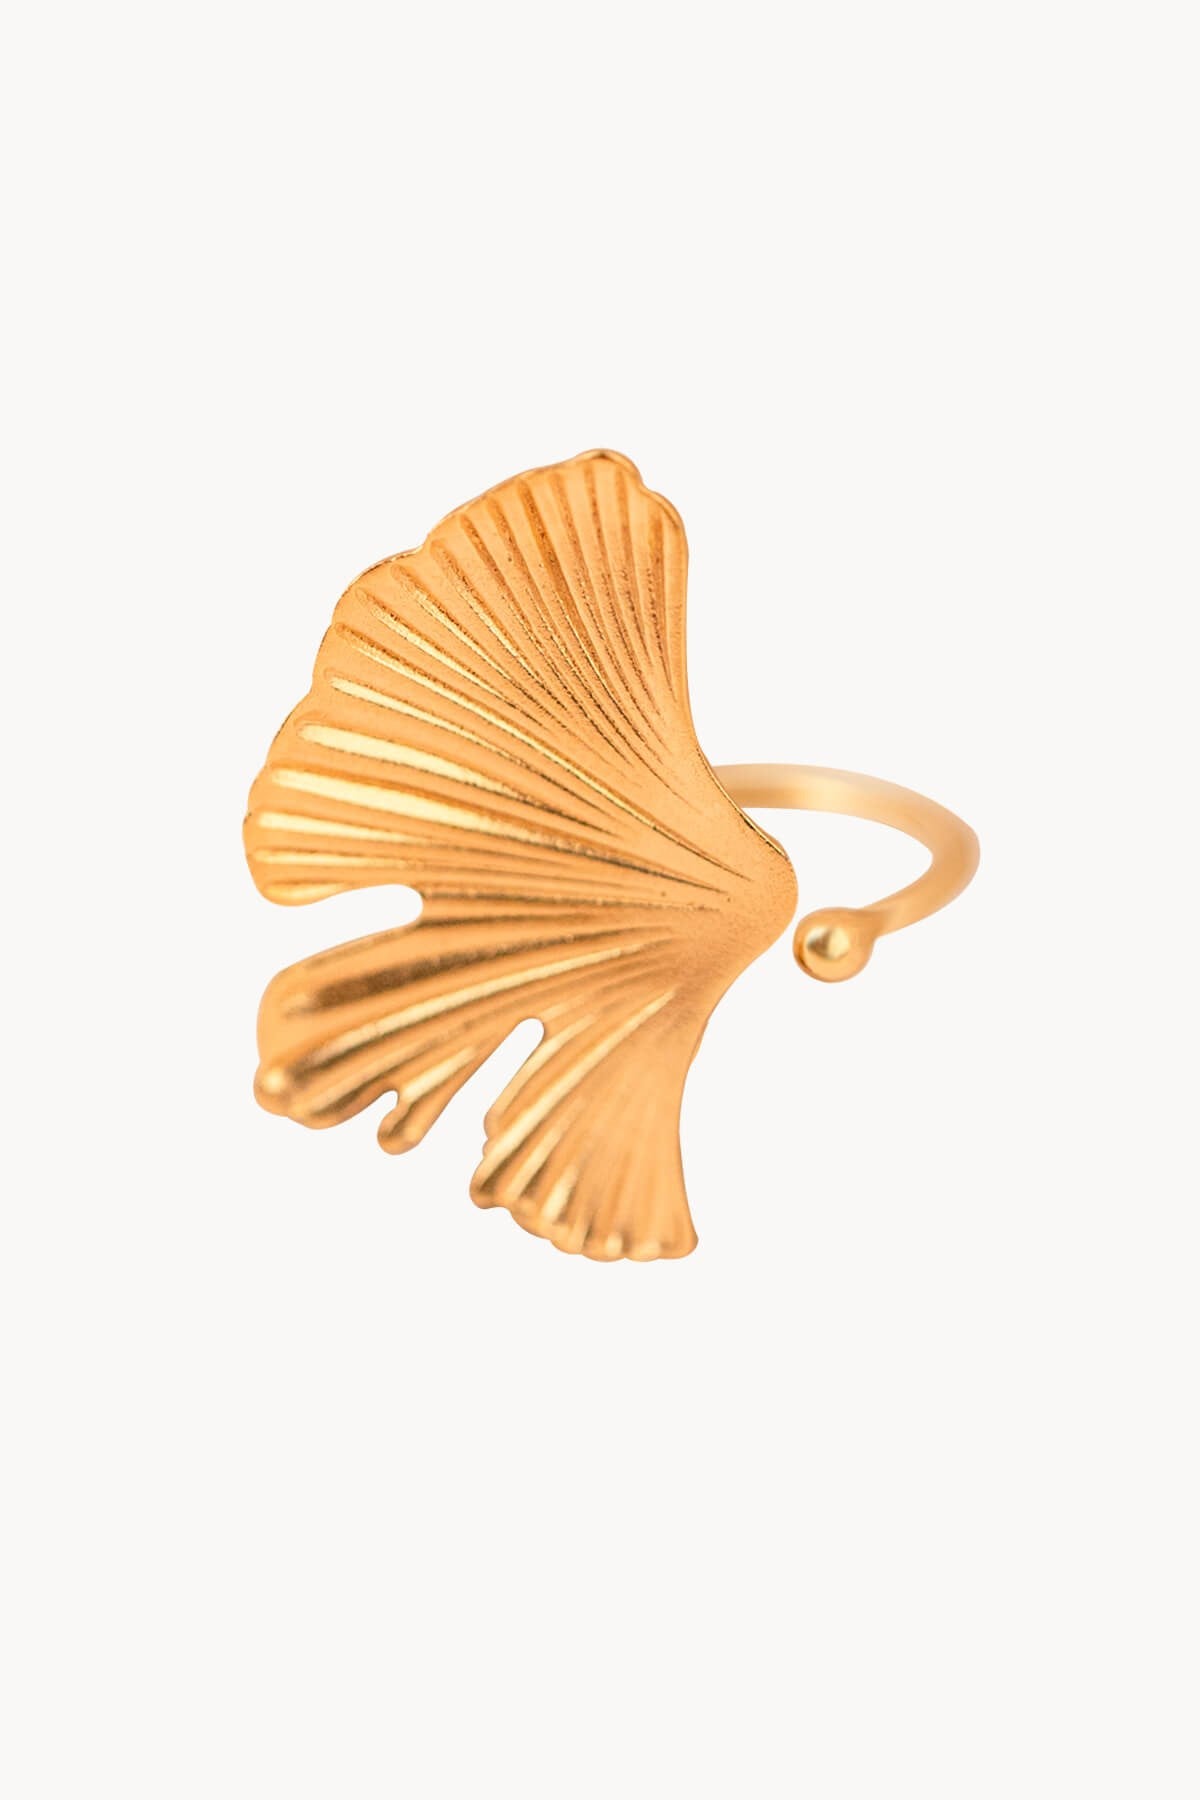 Ginkgo Biloba Leaf Ring Large Gold Plated